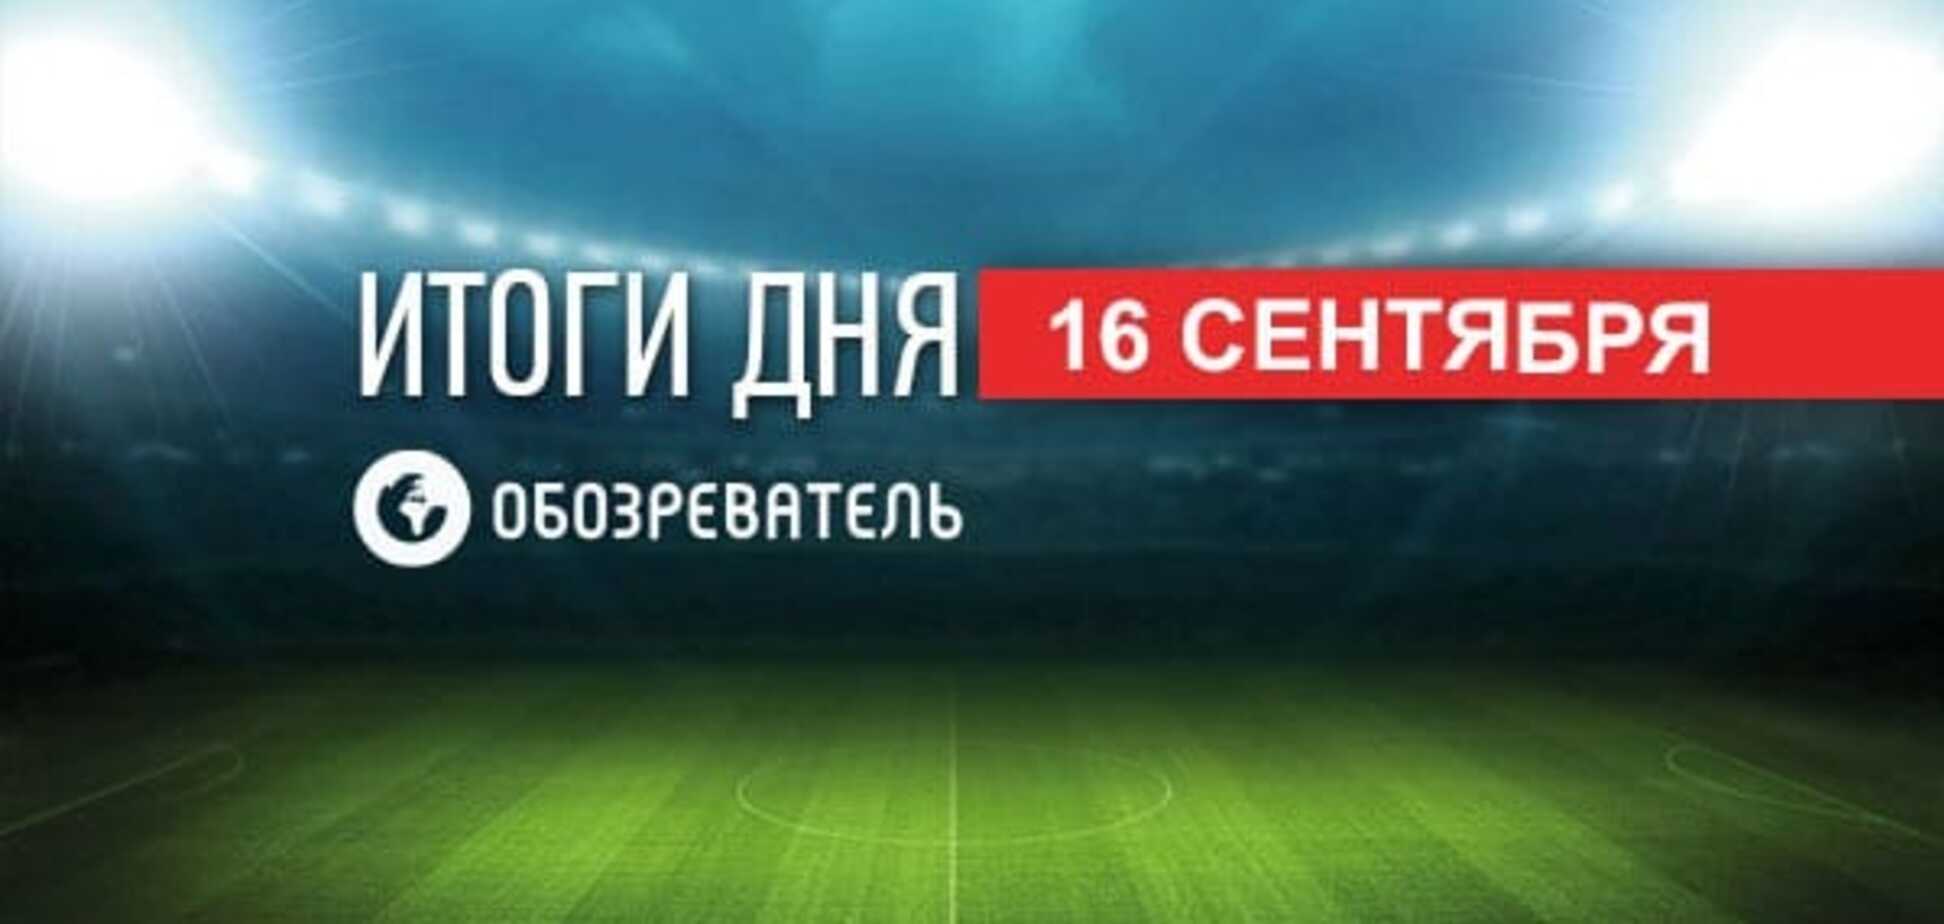 Вратарь 'Шахтера' уехал в Россию и рекорды Украины на Паралимпиаде: спортивные итоги 16 сентября